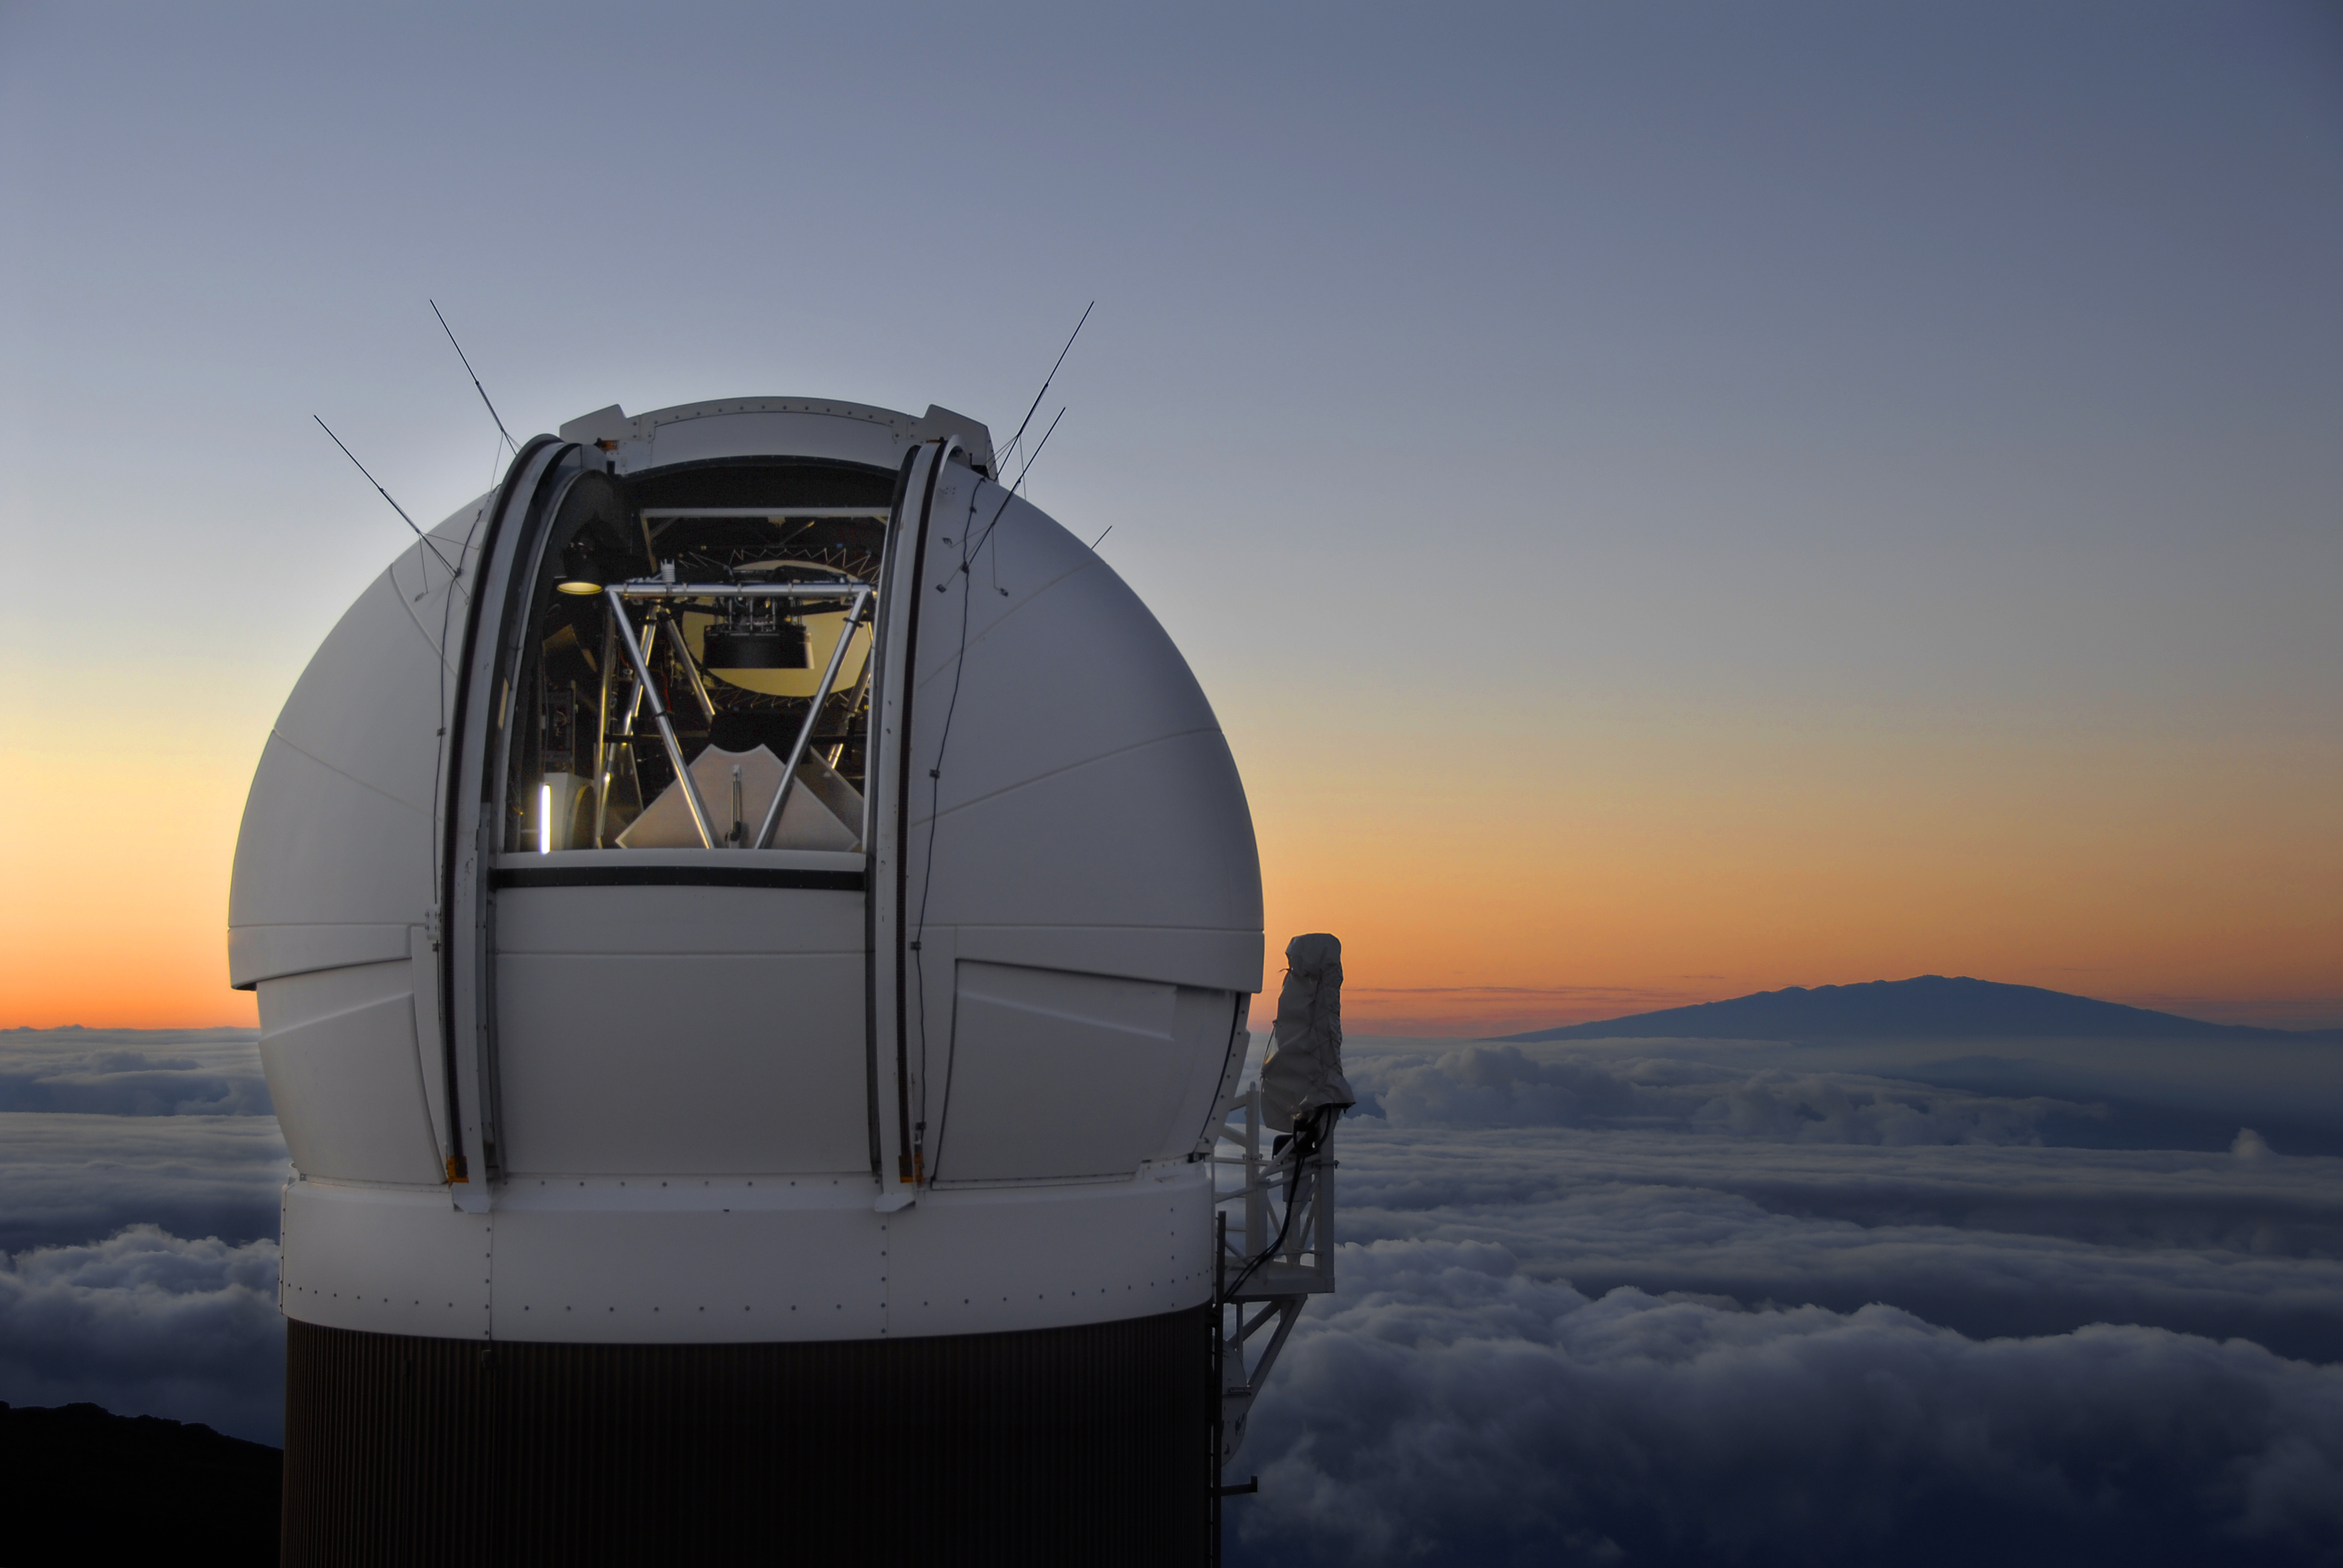 La coupole abritant le télescope de 1,8 m de diamètre situé au sommet du Haleakala, juste avant le lever du Soleil. © PS1SC